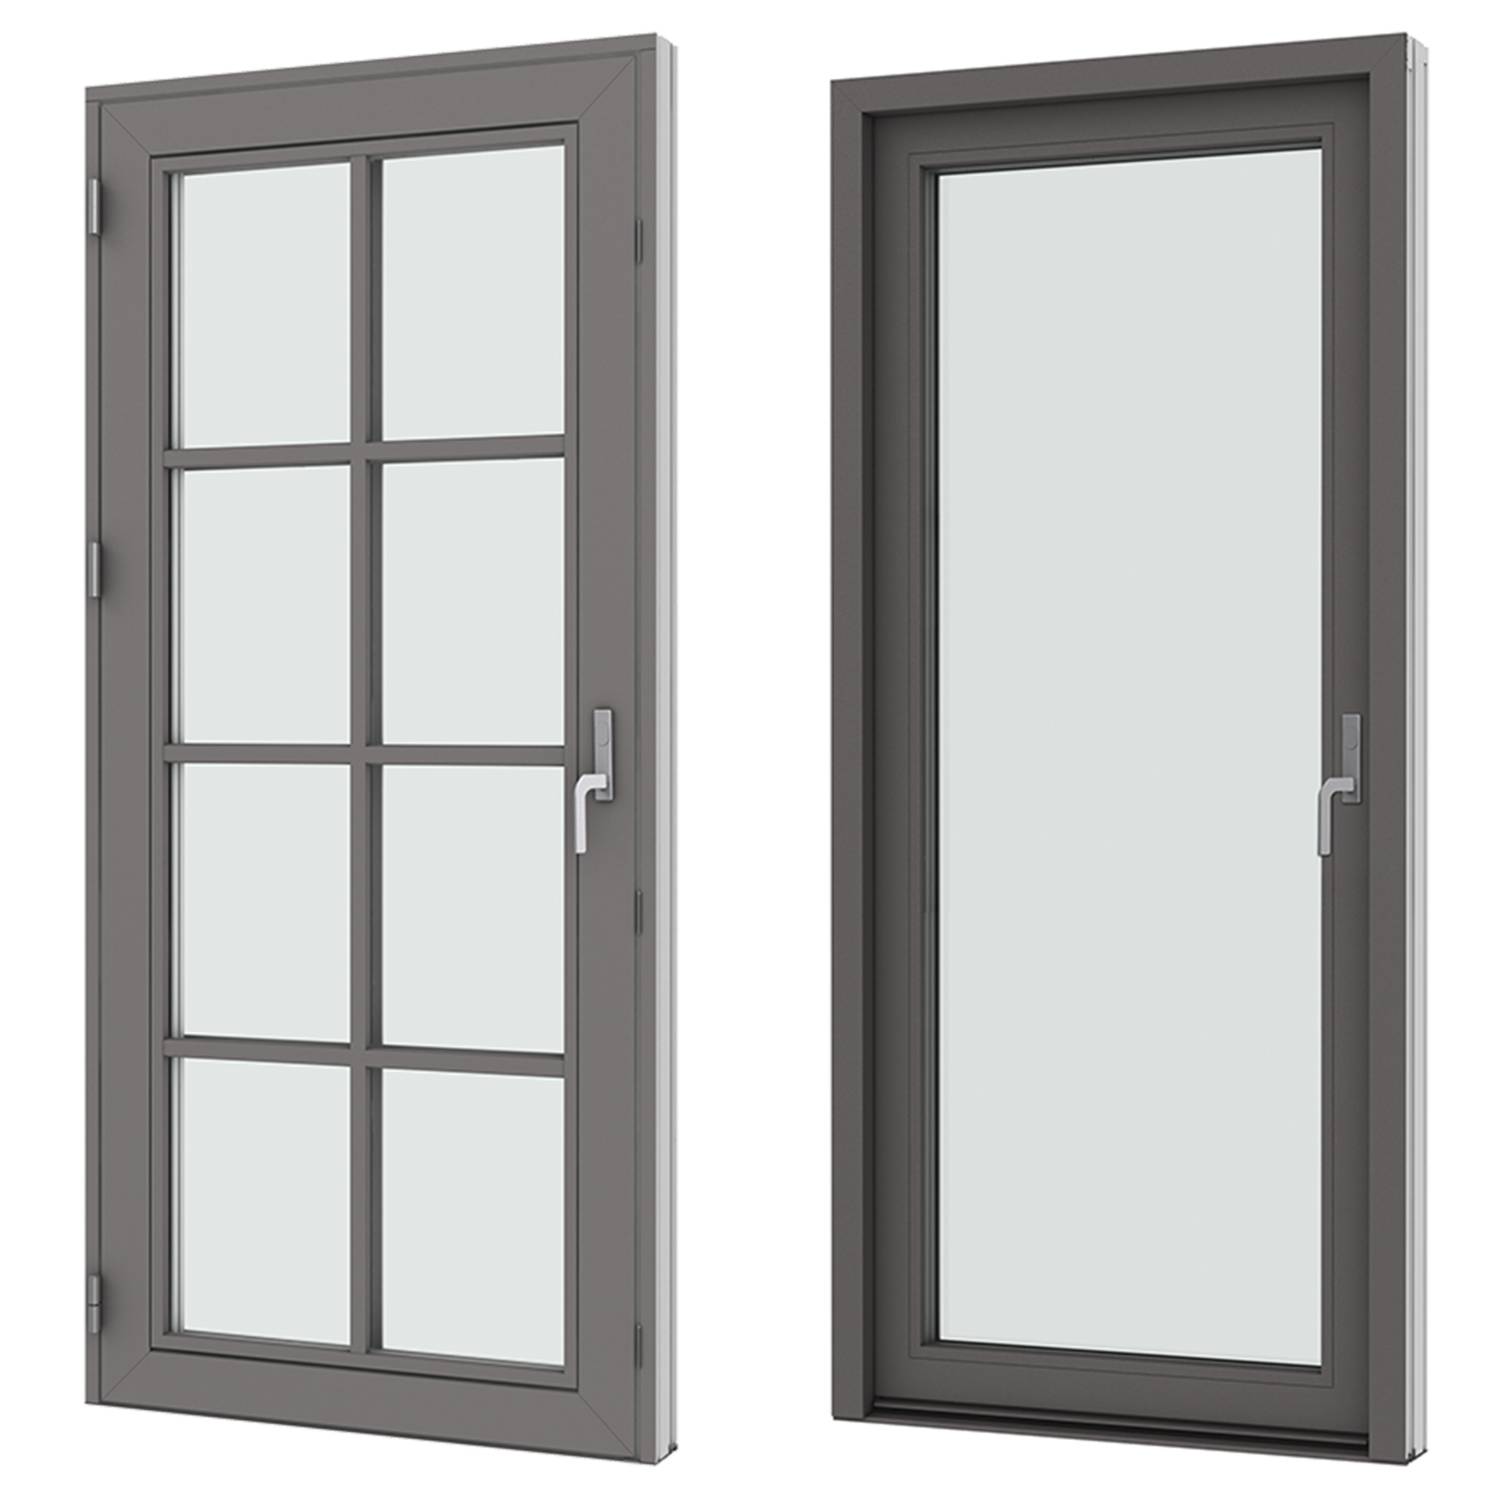 VELFAC Ribo wood/aluminium patio doors